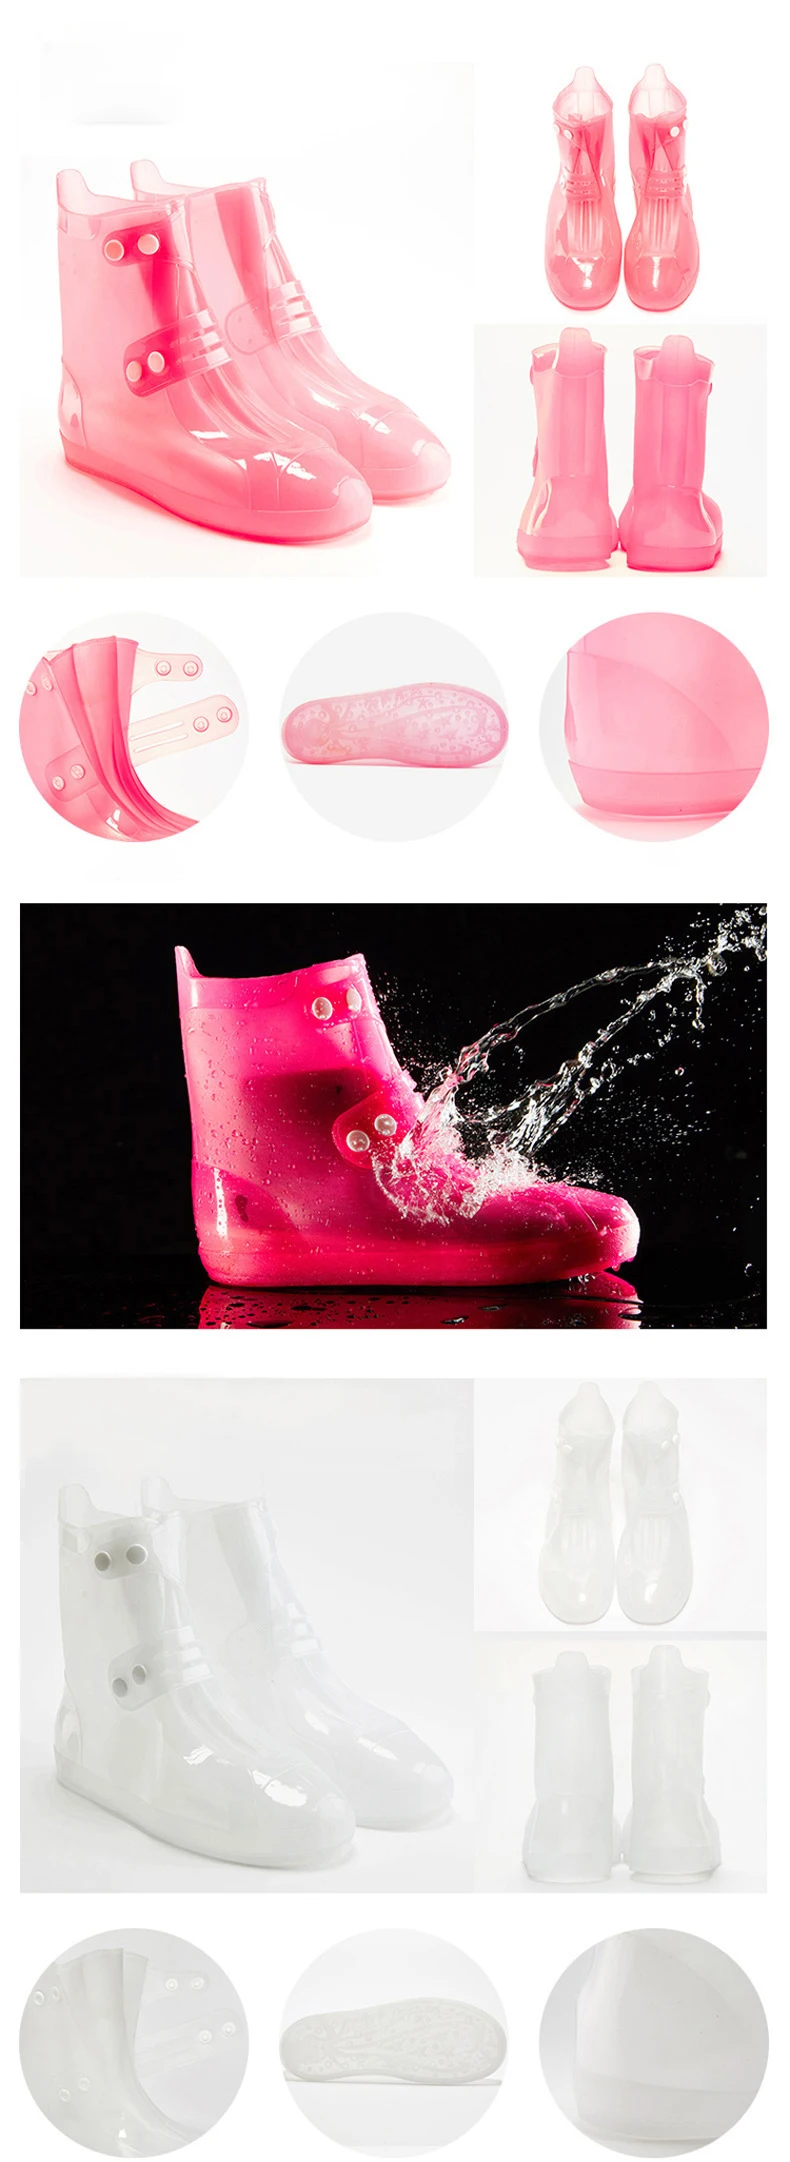 1 пара Противоскользящий водонепроницаемый чехол для обуви Унисекс Многоразовые непромокаемые сапоги толстая износостойкая обувь покрытие для мужчин и женщин маленький размер крышка